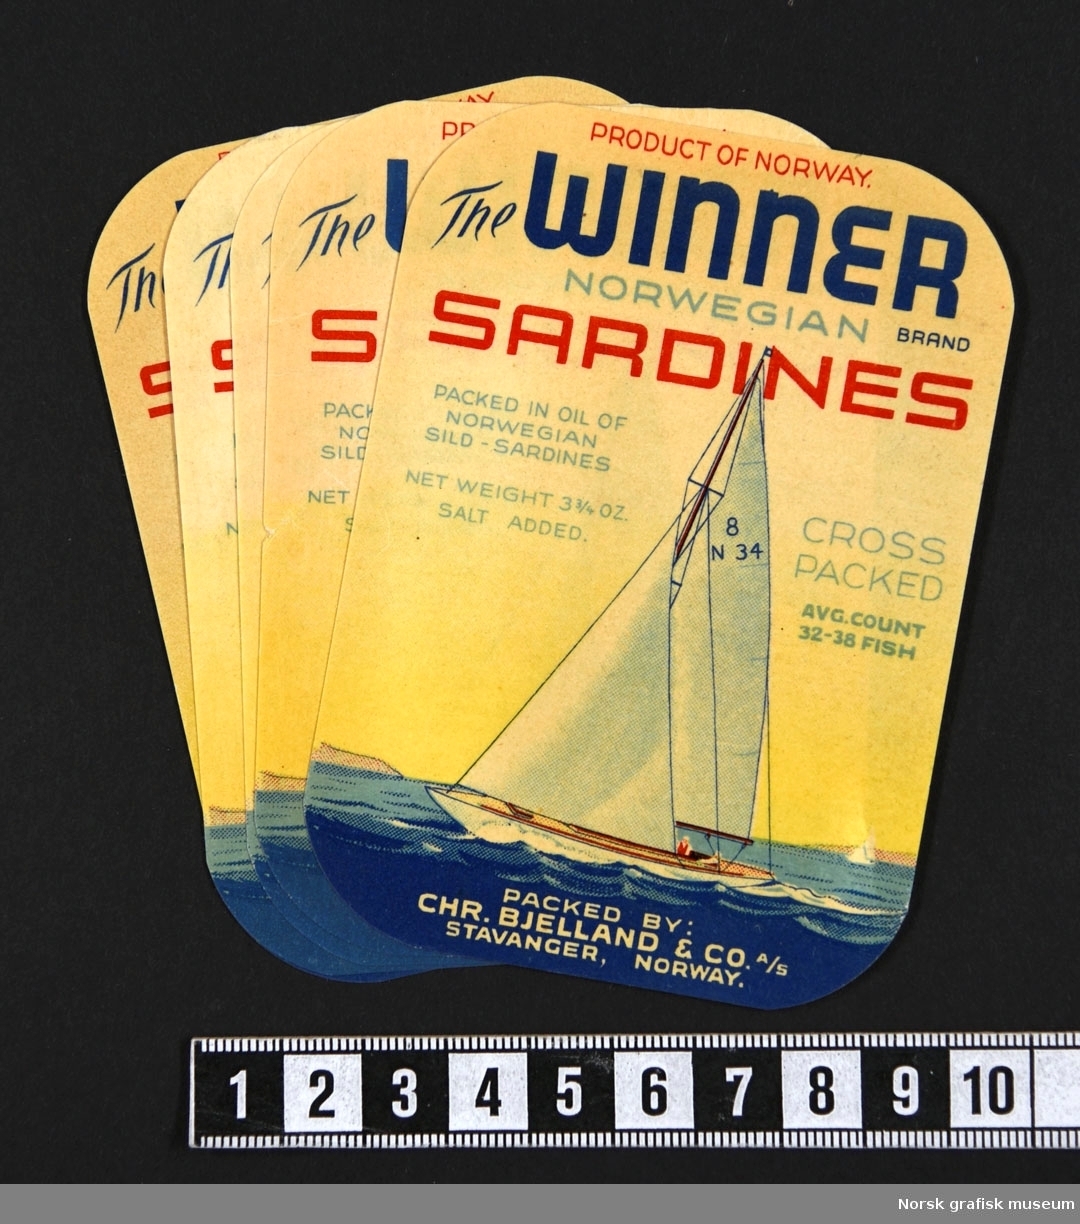 Etiketter med fremstilling av en seilbåt med hvite seil, på blått hav, under en gul himmel. 

"Sardines packed in oil of Norwegian sild- sardines"